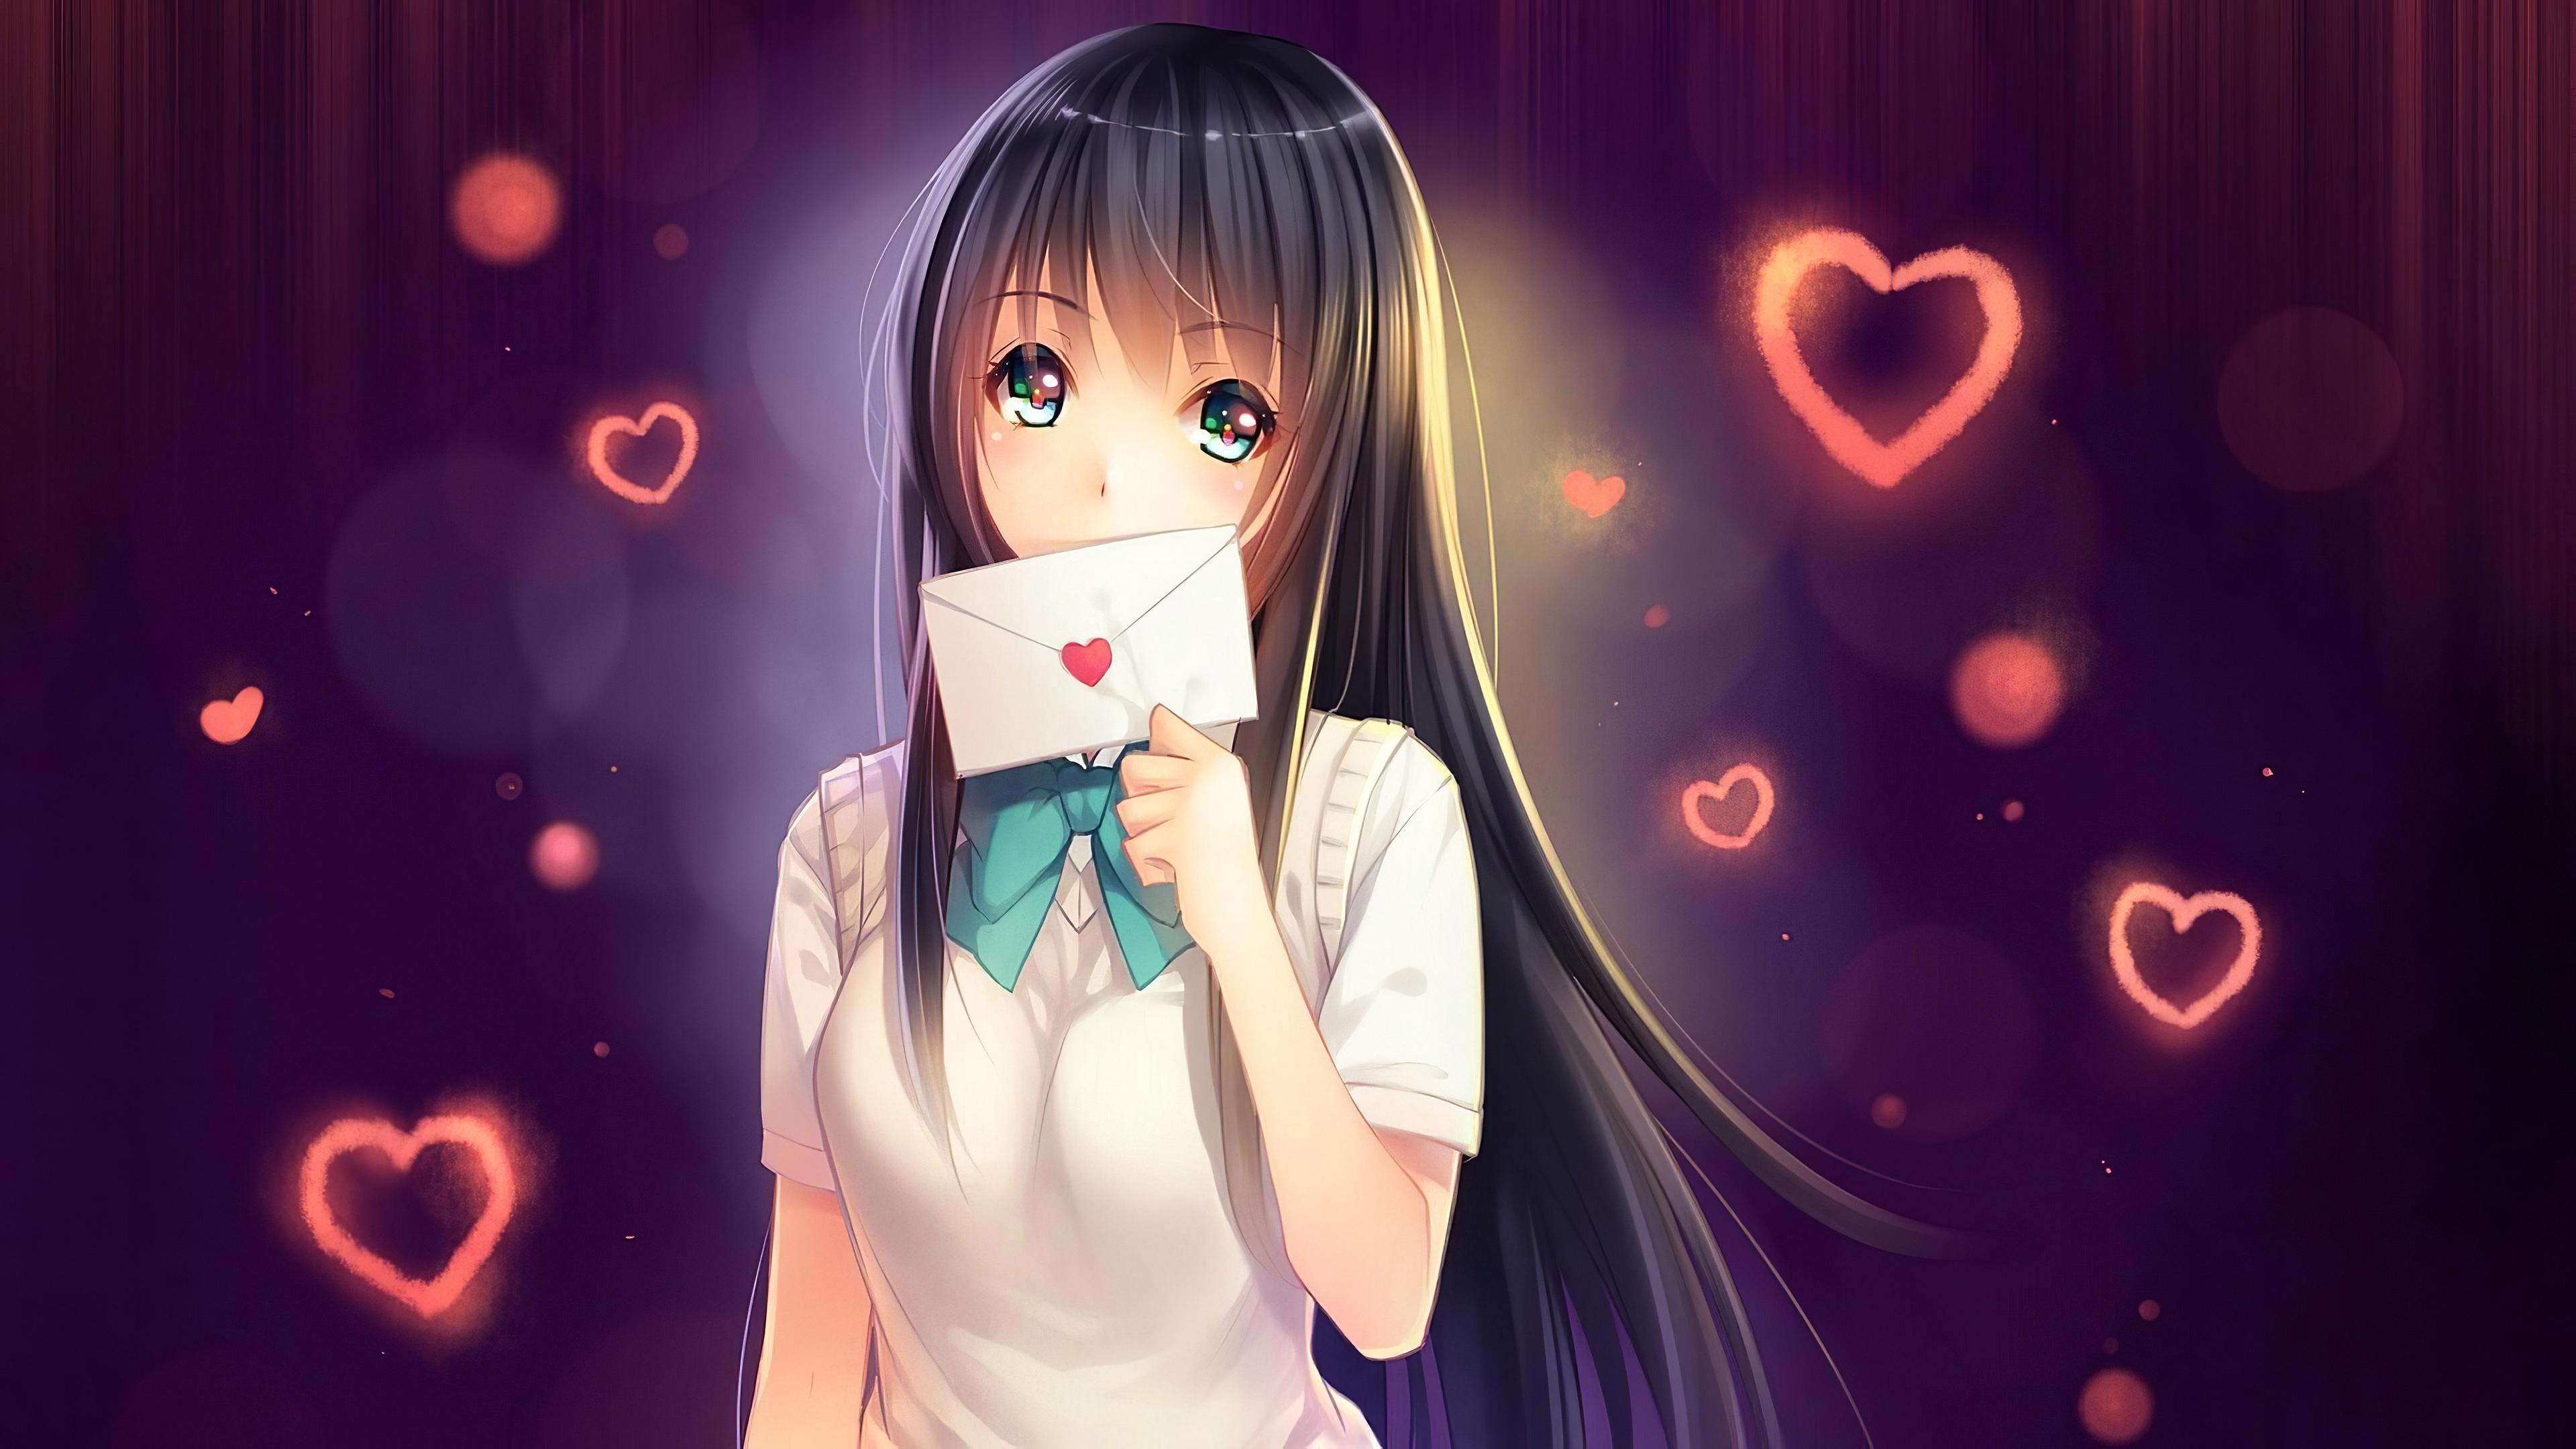 Wallpaper 4k Anime Girl In Love With Love Letter